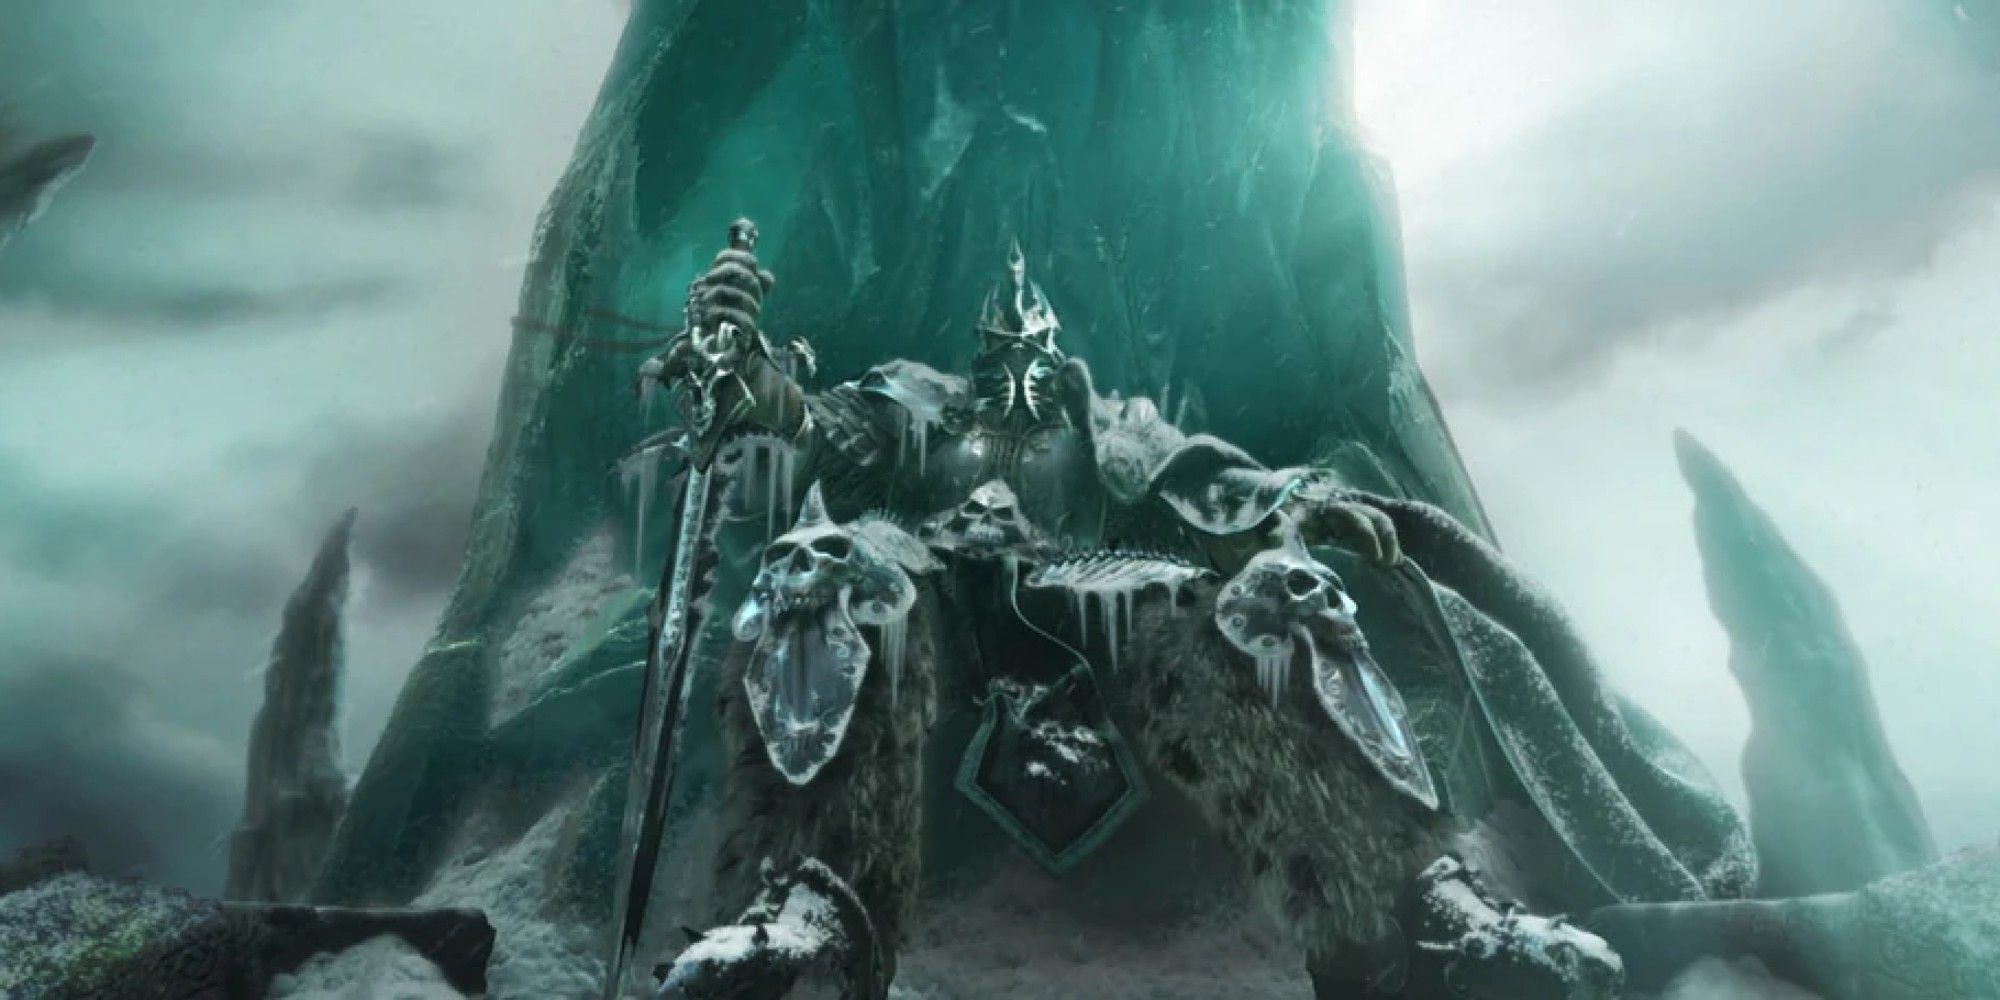 World of Warcraft Arthas in his frozen throne